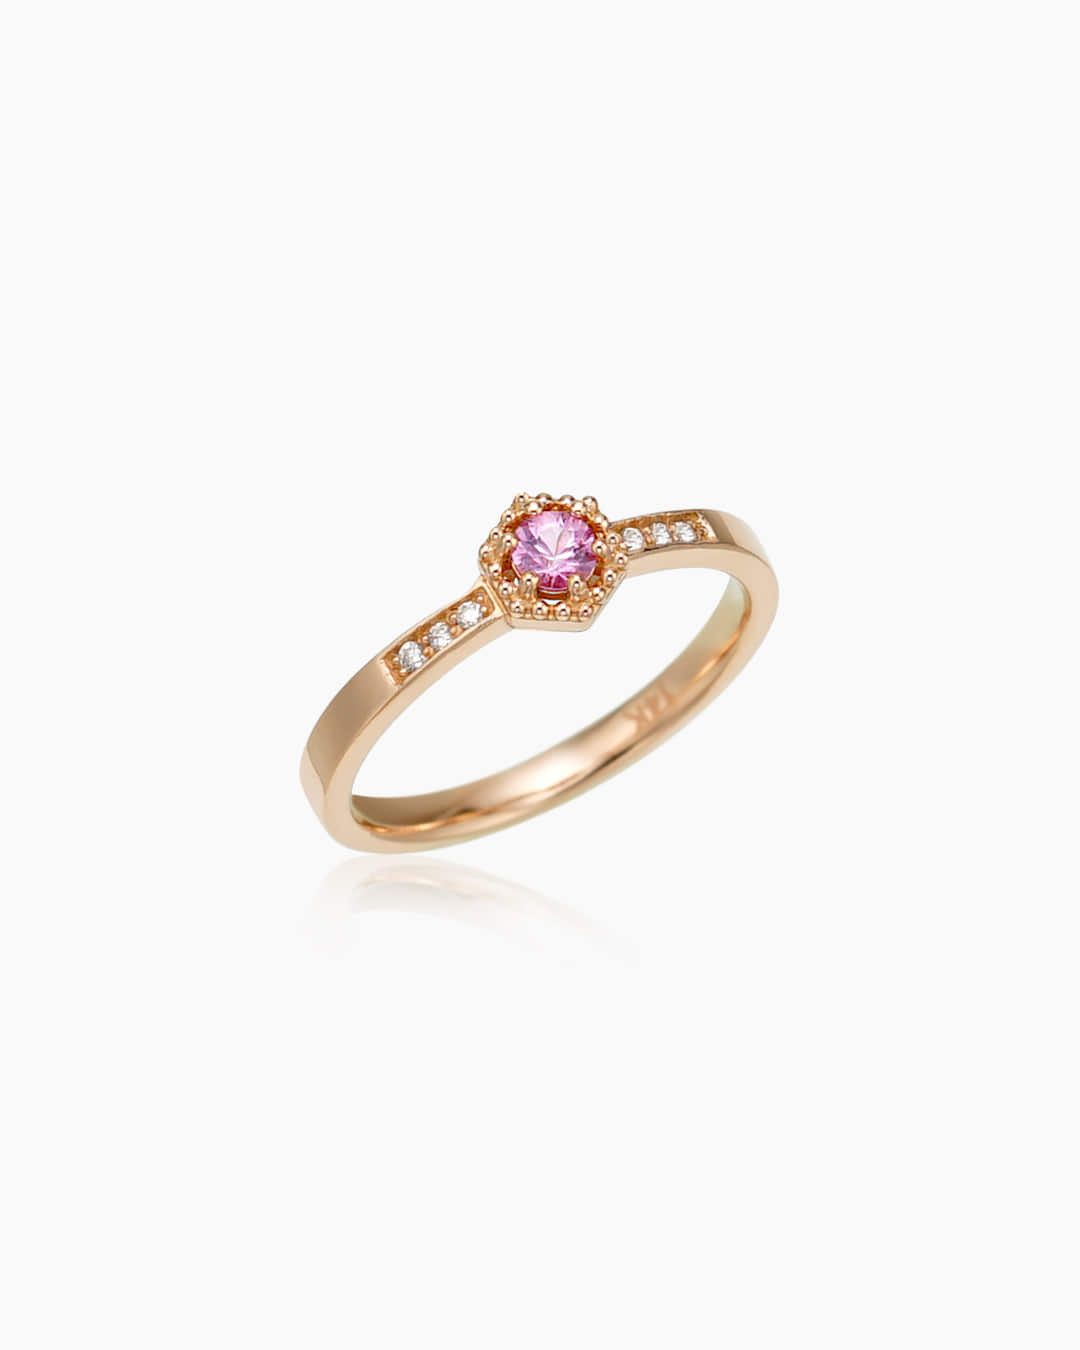 핑크 사파이어와 다이아몬드가 세팅된 보석 반지이다.